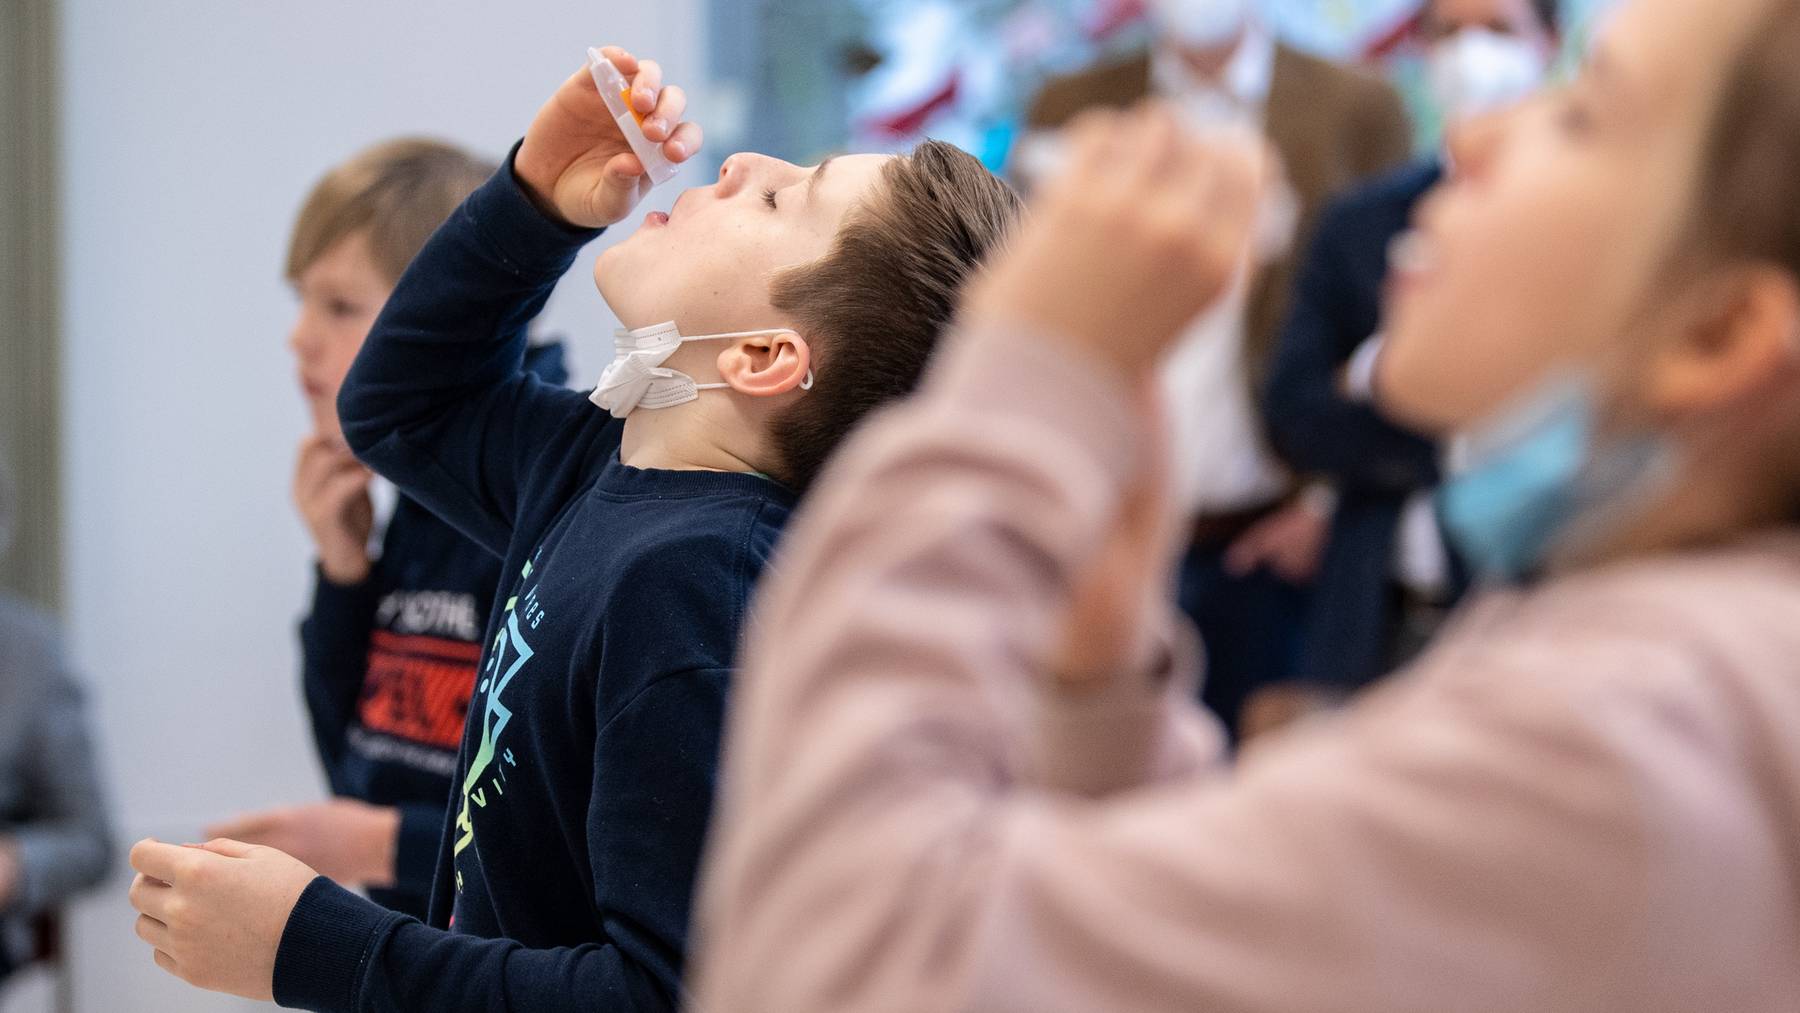 Johann (10 Jahre), Schüler einer vierten Klasse einer Grundschule, lässt sich während eines selbst durchgeführten Coronatests ein Wattestäbchen aus einem Teströhrchen in den Mund fallen. Für den Corona-Selbsttest, der als PCR-Test von einem Labor ausgewertet wird, nehmen die Schüler für einige Sekunden ein Watte-Röhrchen in den Mund, das sich während dieser Zeit mit Speichel vollsaugt. Der bayerischen Kultusminister Piazolo (Freie Wähler) und der bayerische Gesundheitsminister Holetschek (CSU) besuchen die Grundschule, um sich die Umsetzung der Corona-Teststrategie anzuschauen.